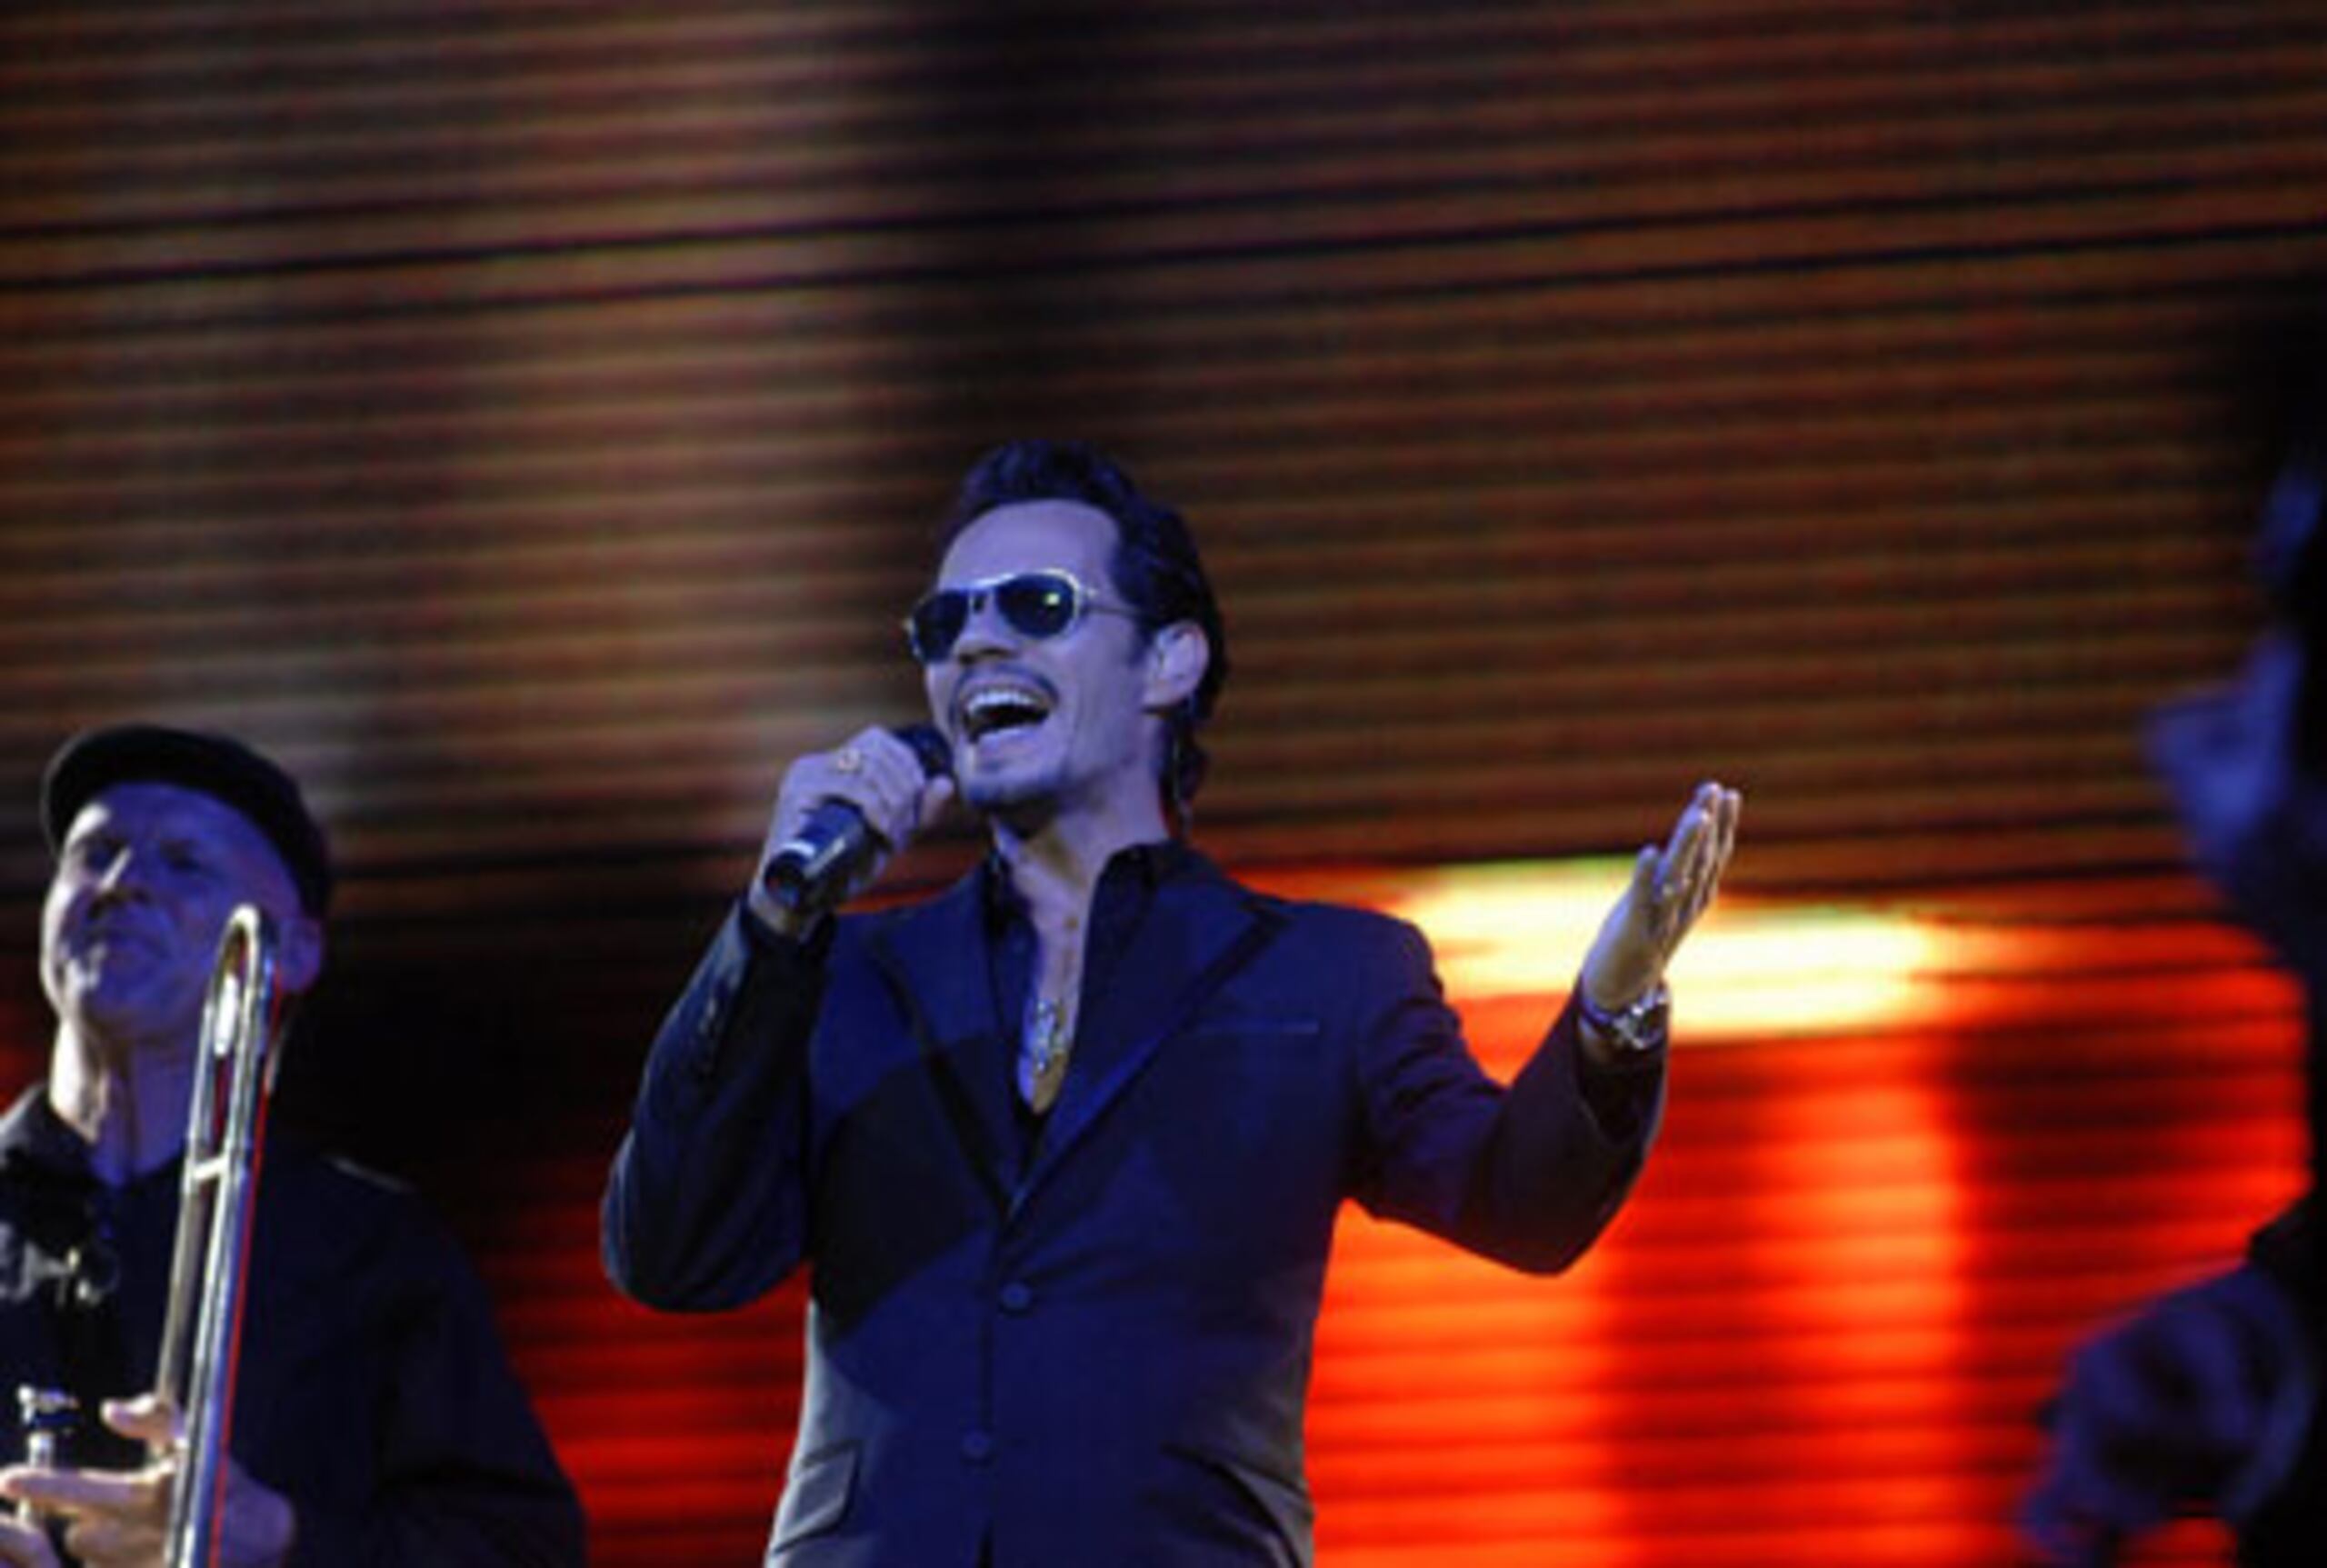 El cantante Marck Anthony se presentó ayer en el estadio Atahualpa de Quito, Ecuador. (EFE / Soledad Contreras)